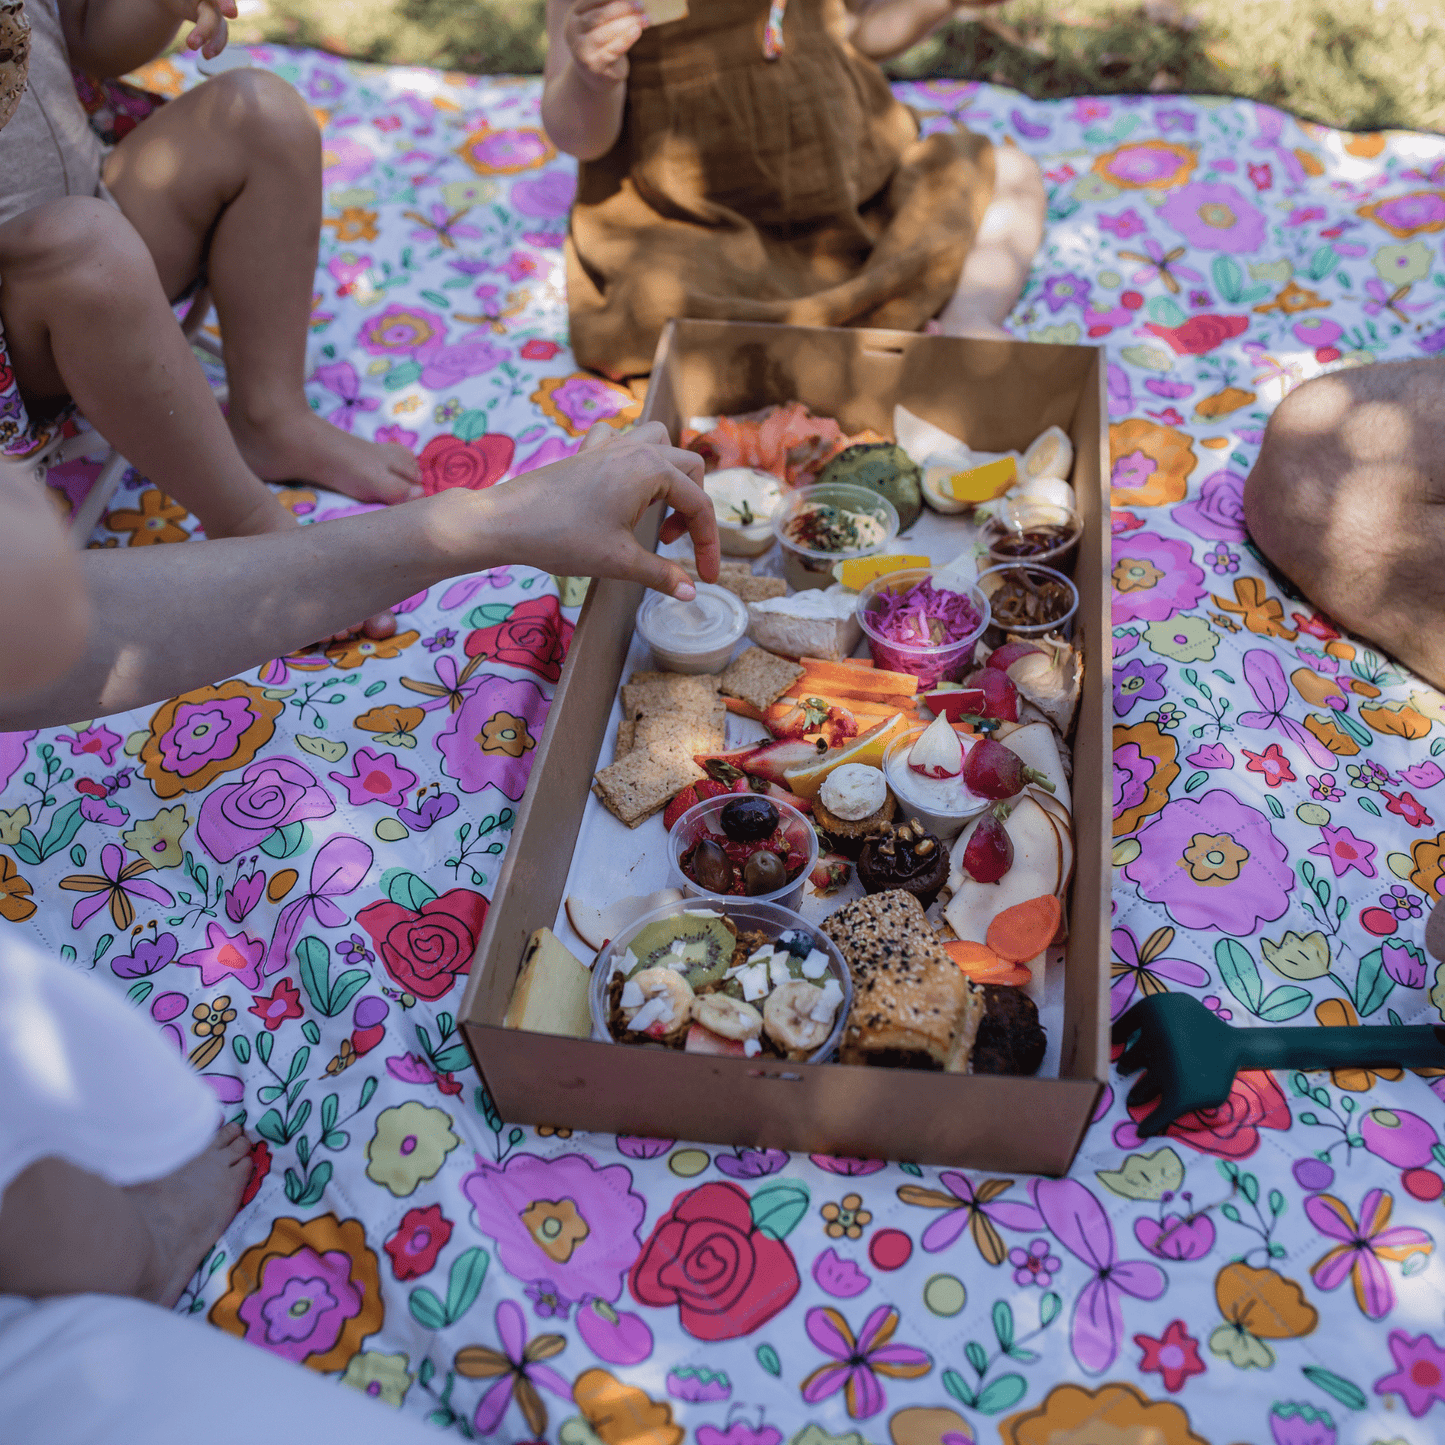 Paloma picnic rug